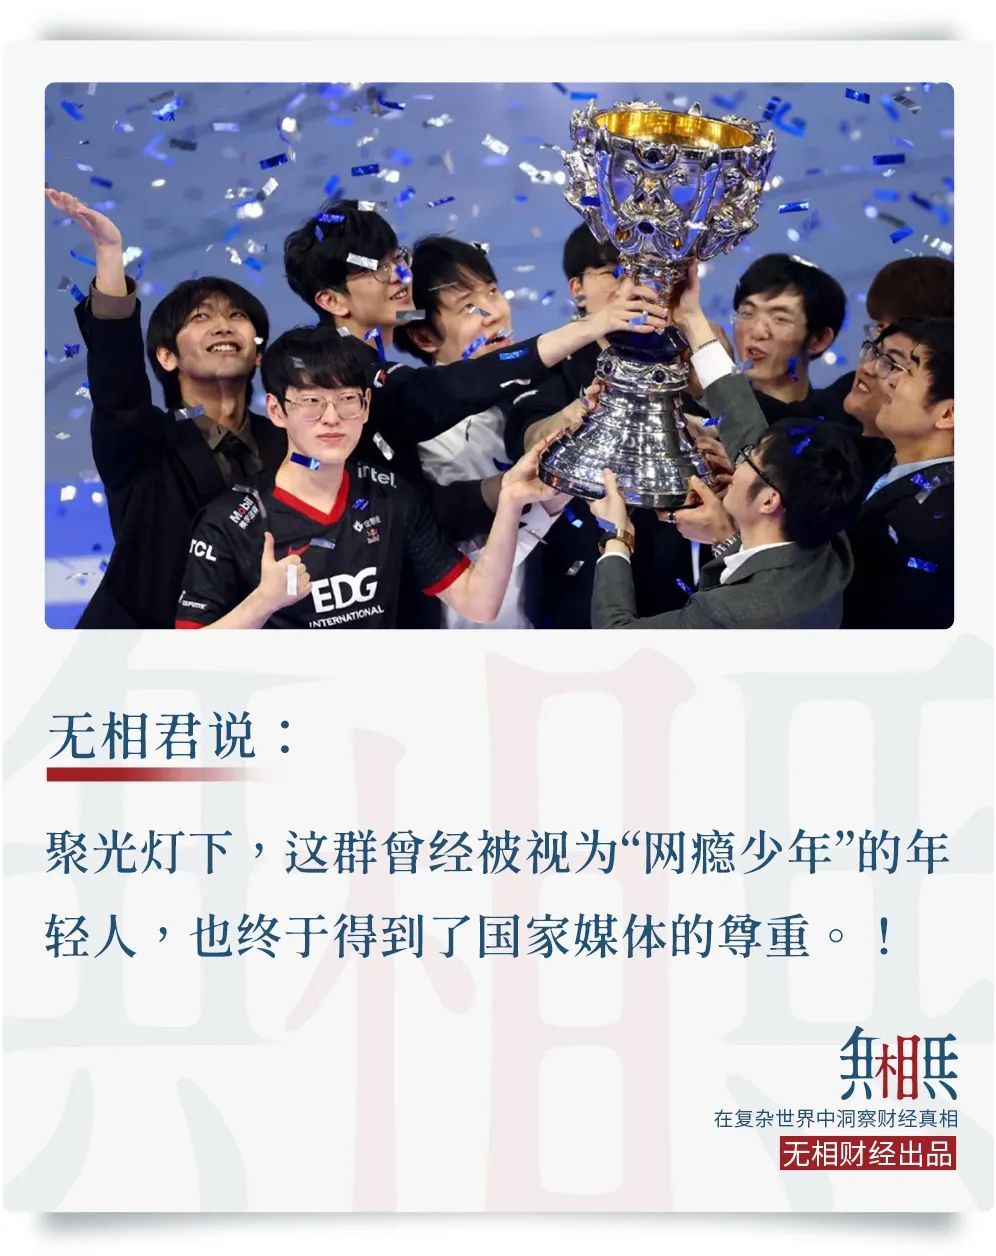 中国电竞二十年的辛酸路！EDG夺得S11冠军 竟然有孩子吃shi……